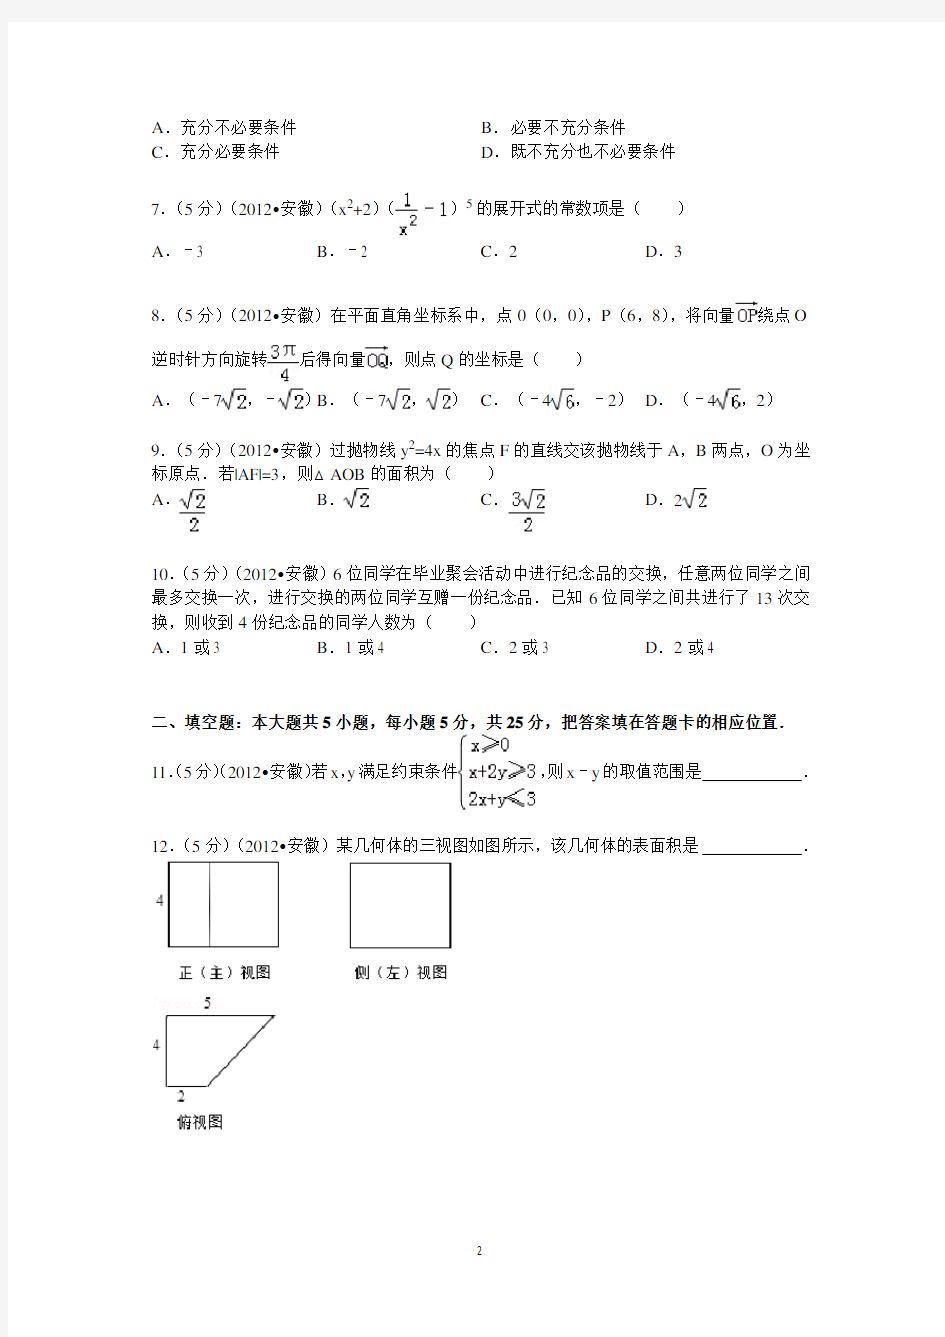 (完整版)2012年安徽省高考数学试卷(理科)答案与解析